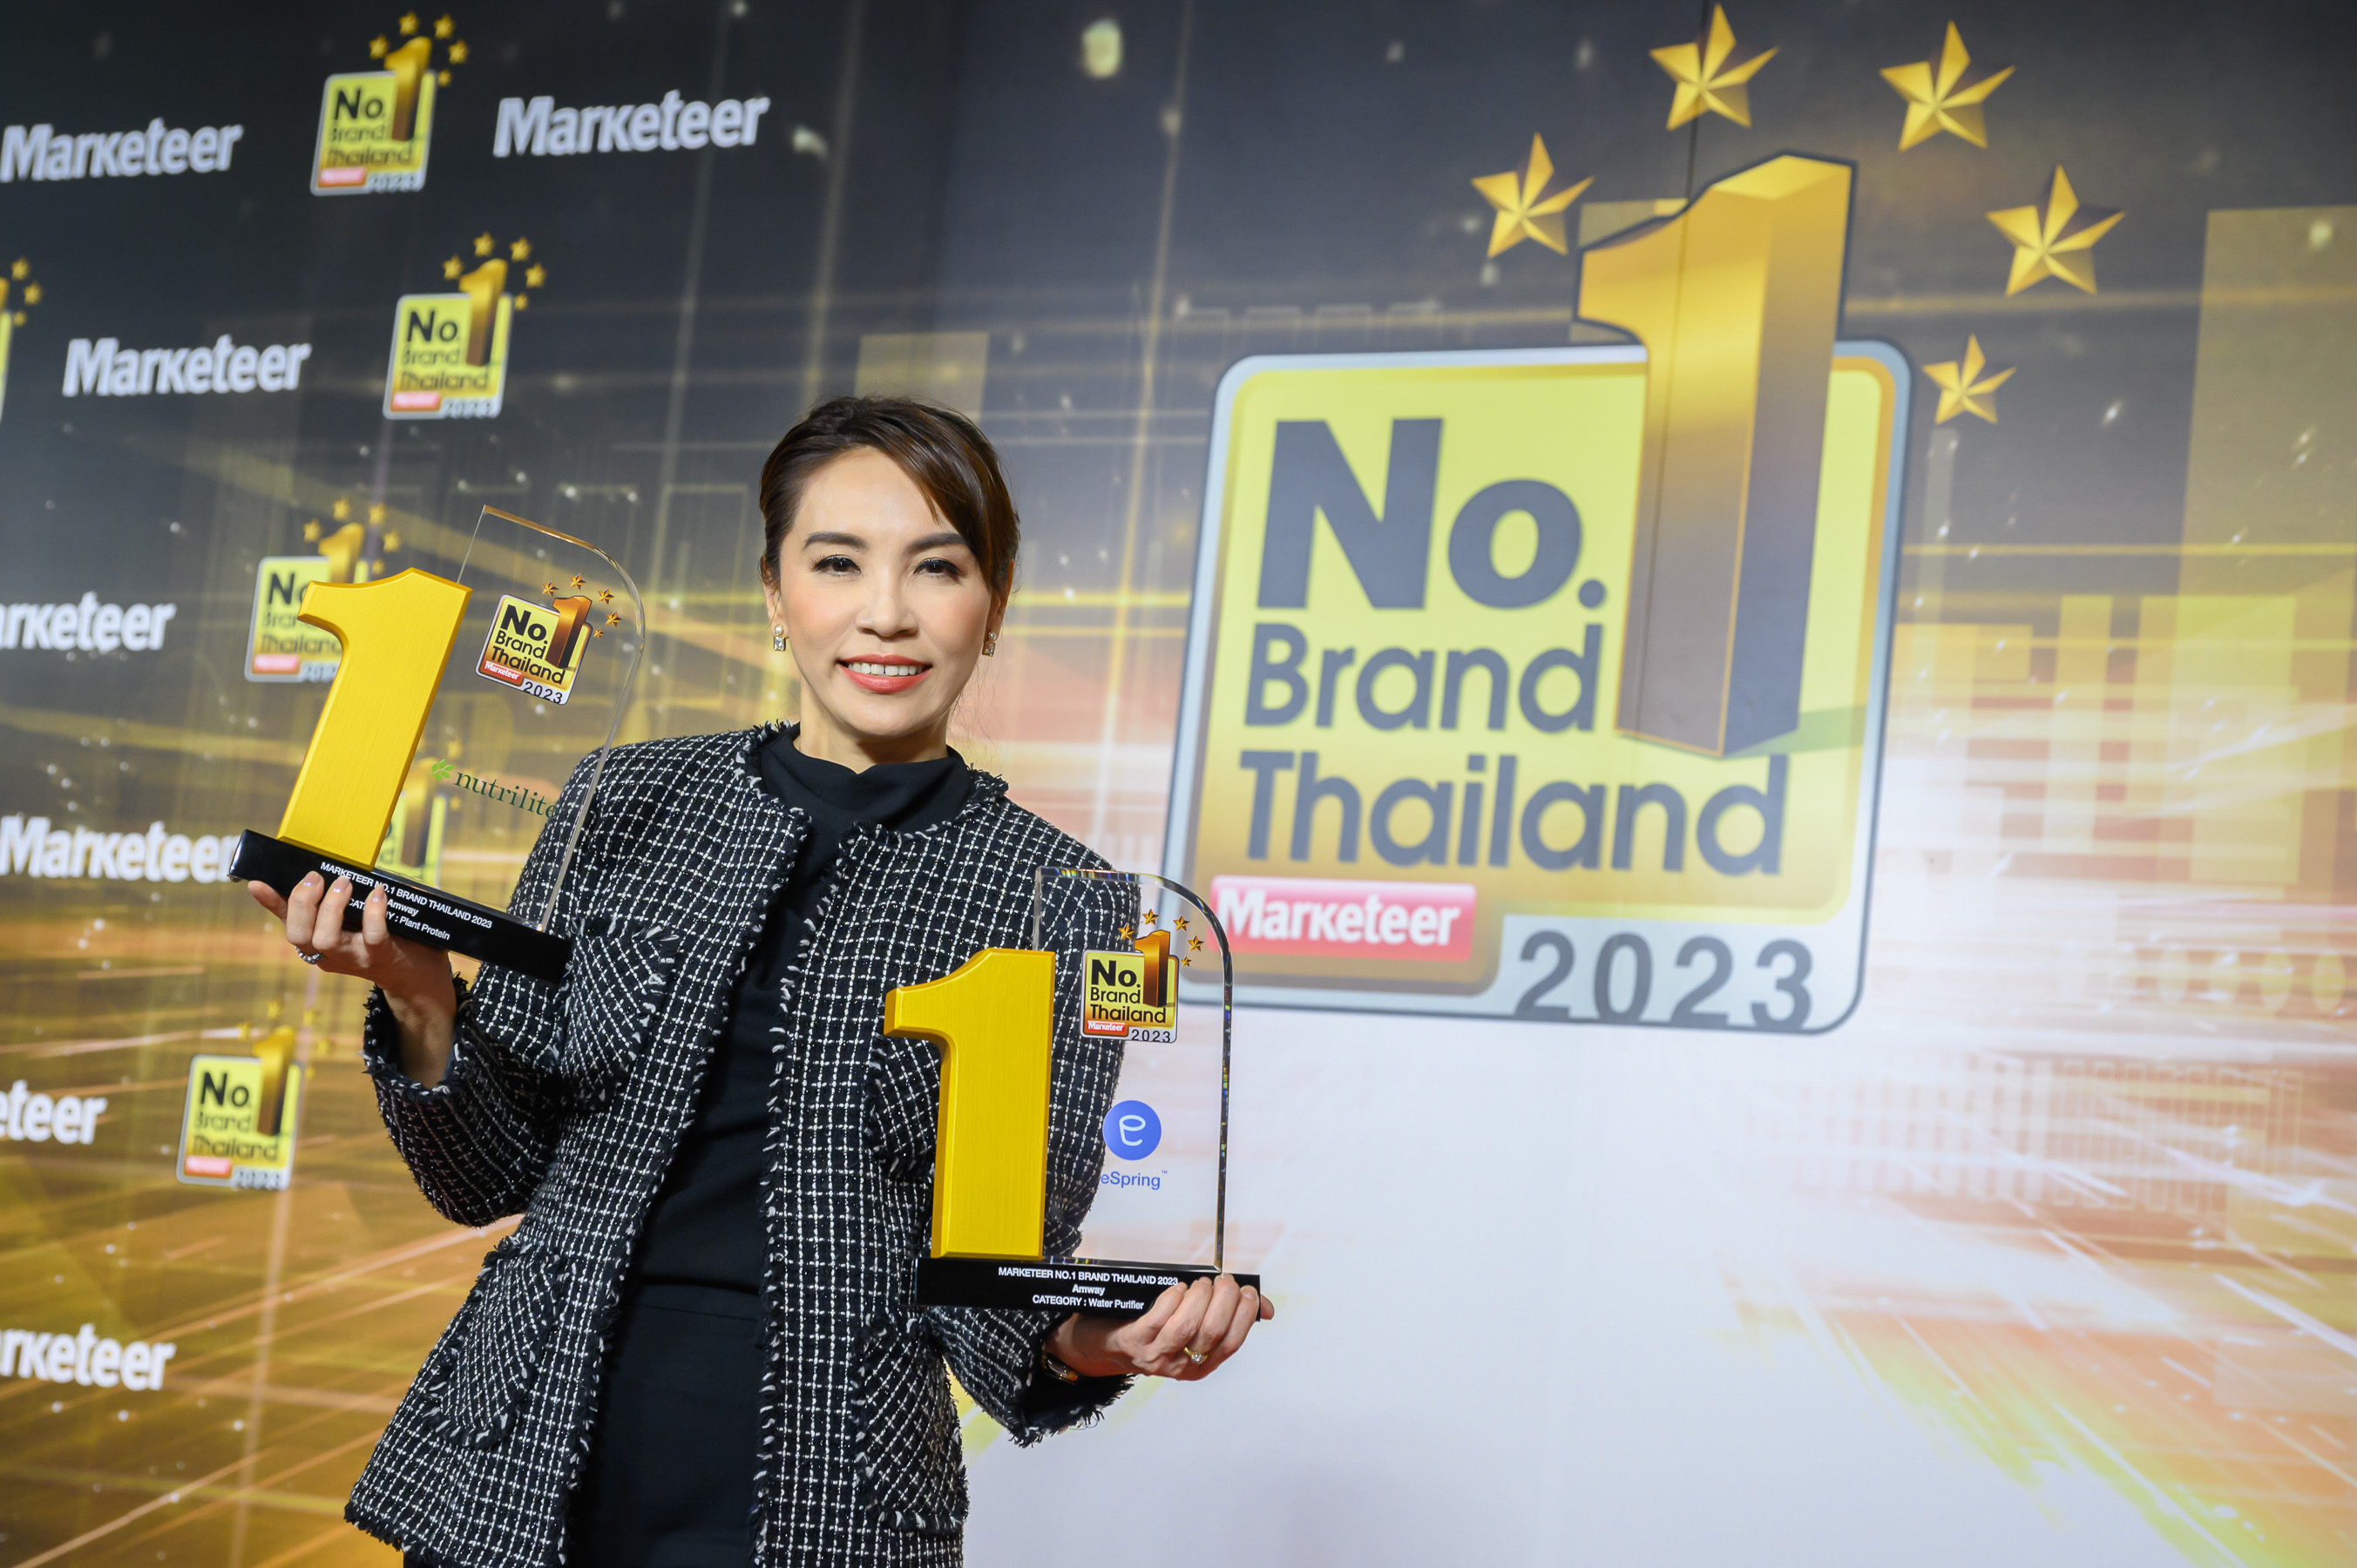 “แอมเวย์” คว้า 2 รางวัลยอดนิยมอันดับ 1 ในใจผู้บริโภค จากนิวทริไลท์ ออล แพลนท์ โปรตีน และเครื่องกรองน้ำ อีสปริง ตอกย้ำแบรนด์ผู้นำ จากรางวัล “Marketeer No.1 Brand Thailand 2023”